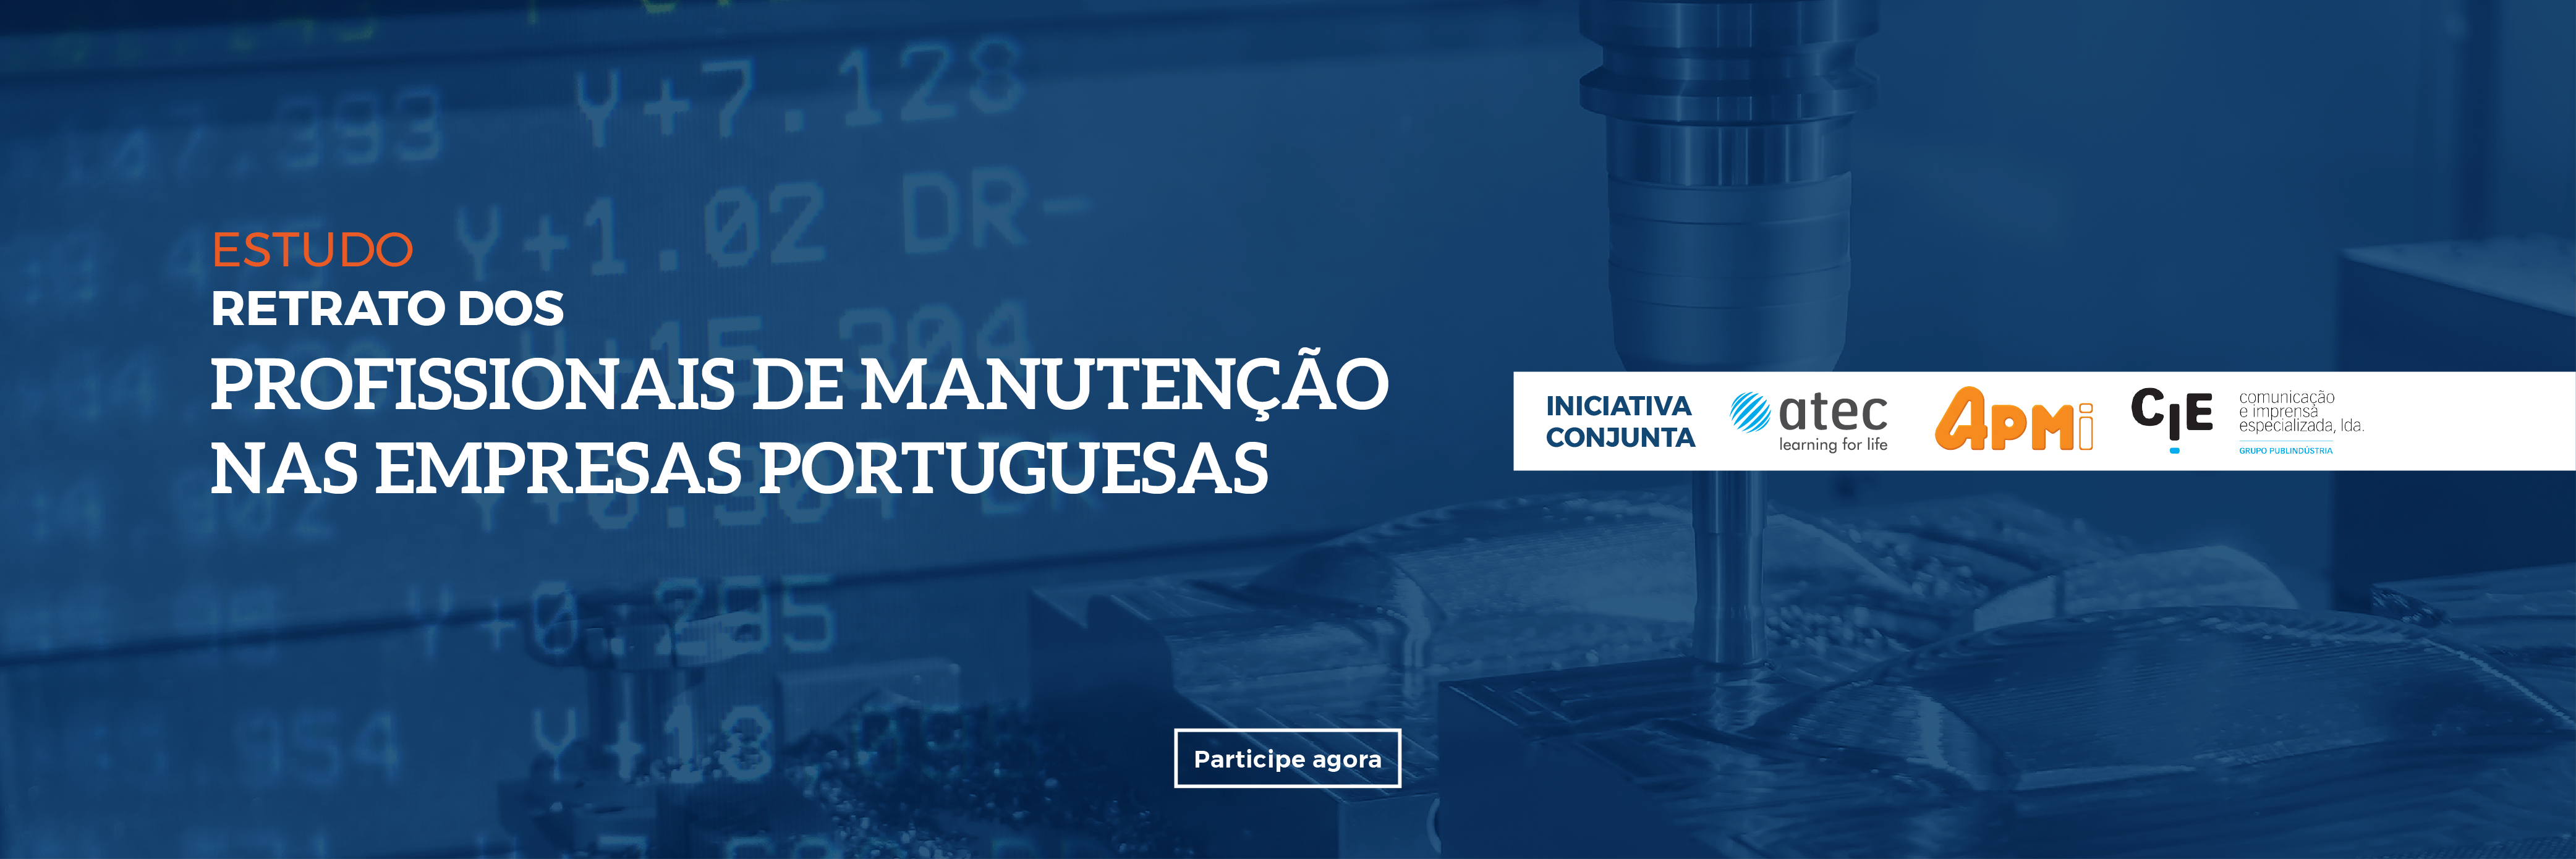 ATEC-Banner_site_Retrato_dos_Profissionais_de_Manuteno_nas_Empresas_Portuguesas